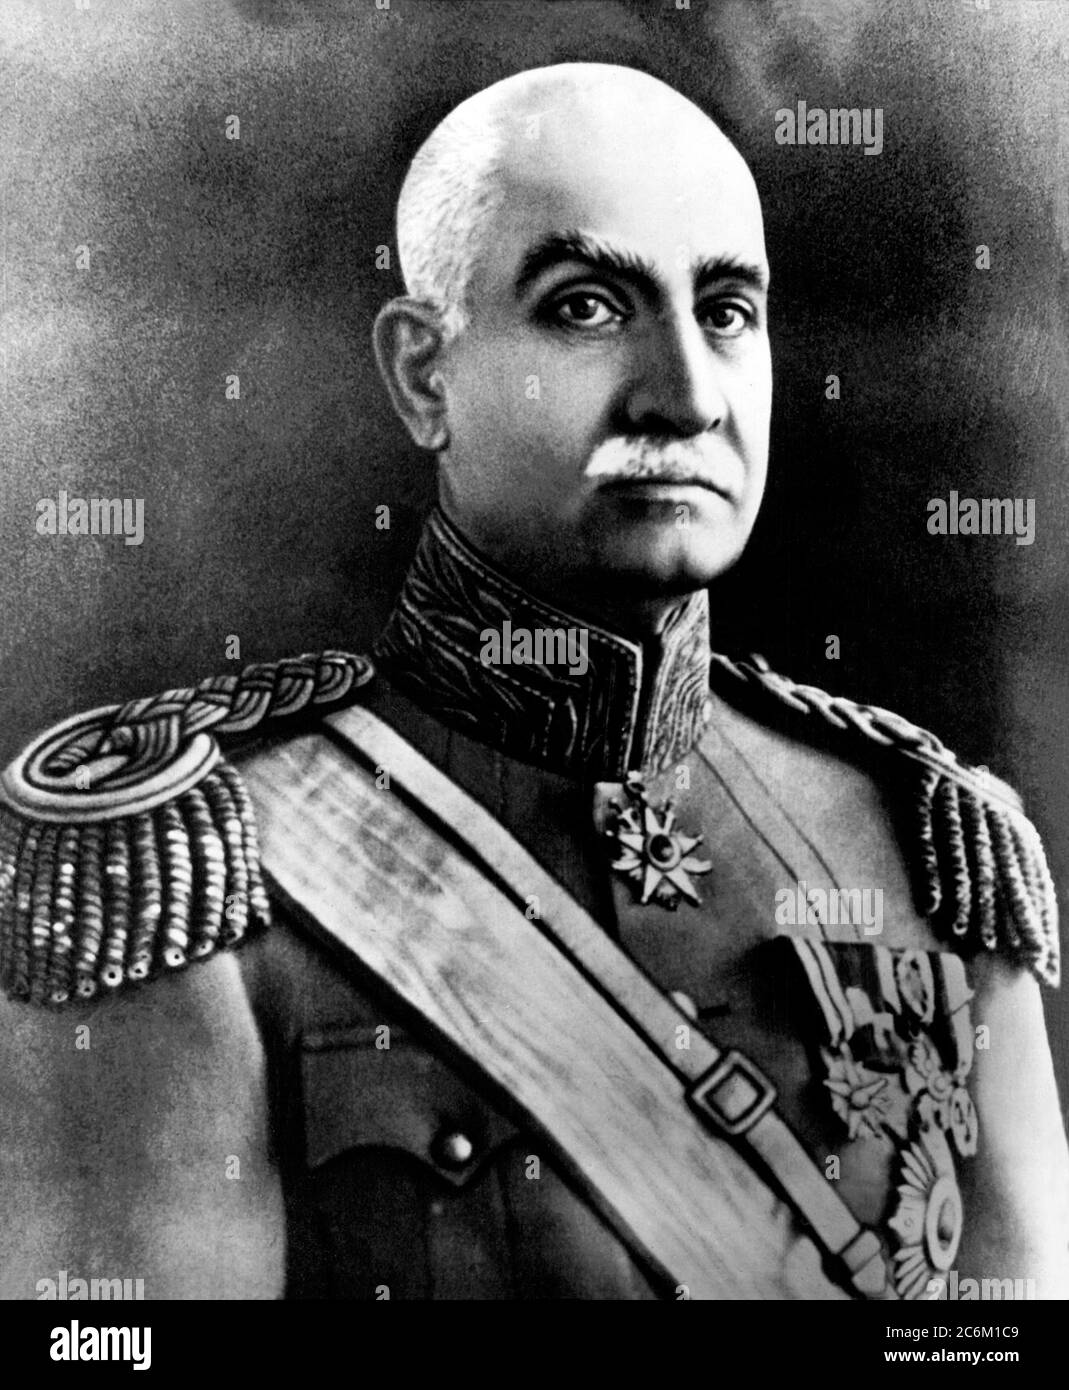 1940 c, PERSIEN : der persische Kaiser REZA Shah PAHLAVI ( 1878 - 1944 ). War der Schah des Iran vom 15. Dezember 1925 bis er durch die anglo-sowjetische Invasion des Iran am 16. September 1941 gezwungen wurde, abzudanken. Vater von Mohammad Reza Pahlavi Shah ( 1919 - 1980 ). - IRAN - IMPERATORE della PERSIA - ADEL - NOBILI - Nobiltà - FOTO STORICHE - GESCHICHTE - Uniform - uniforme divisa militare --- Archivio GBB Stockfoto